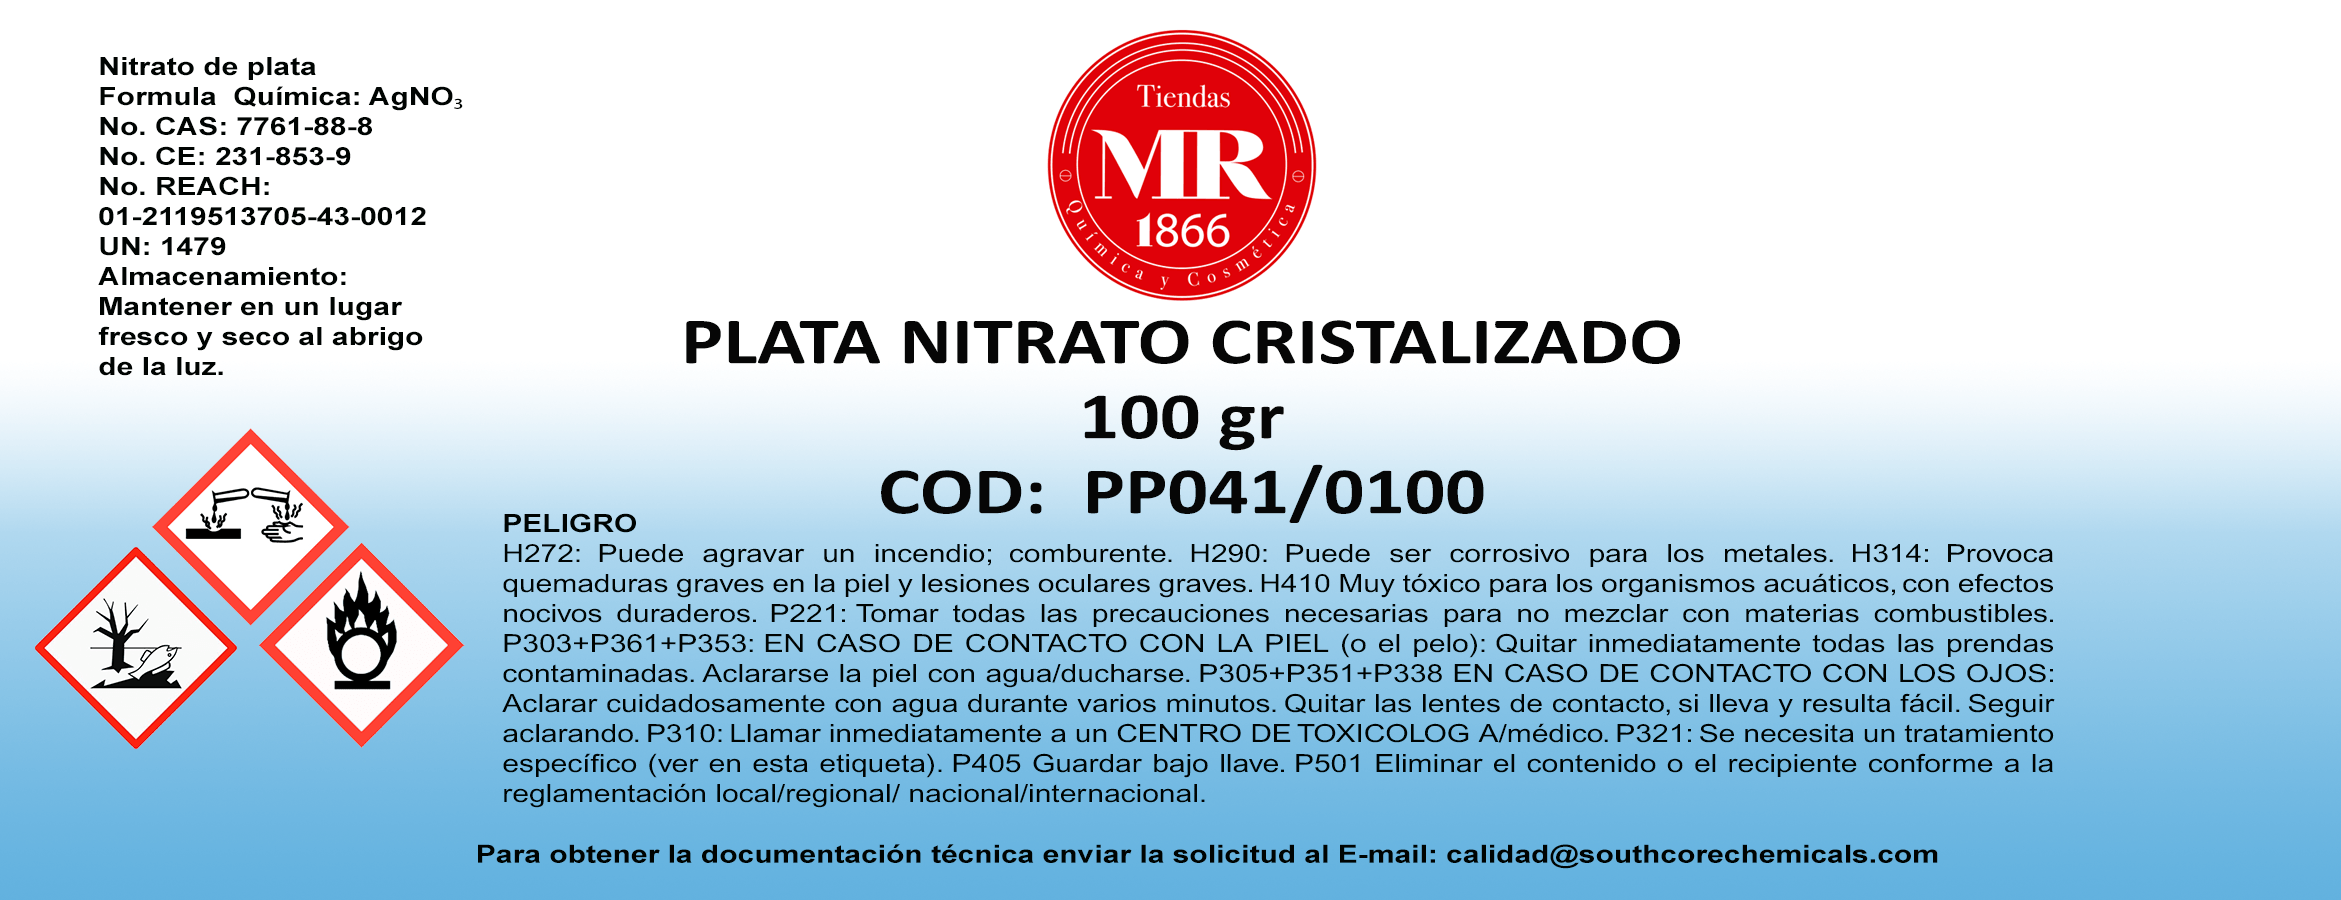 100g Nitrato de Plata